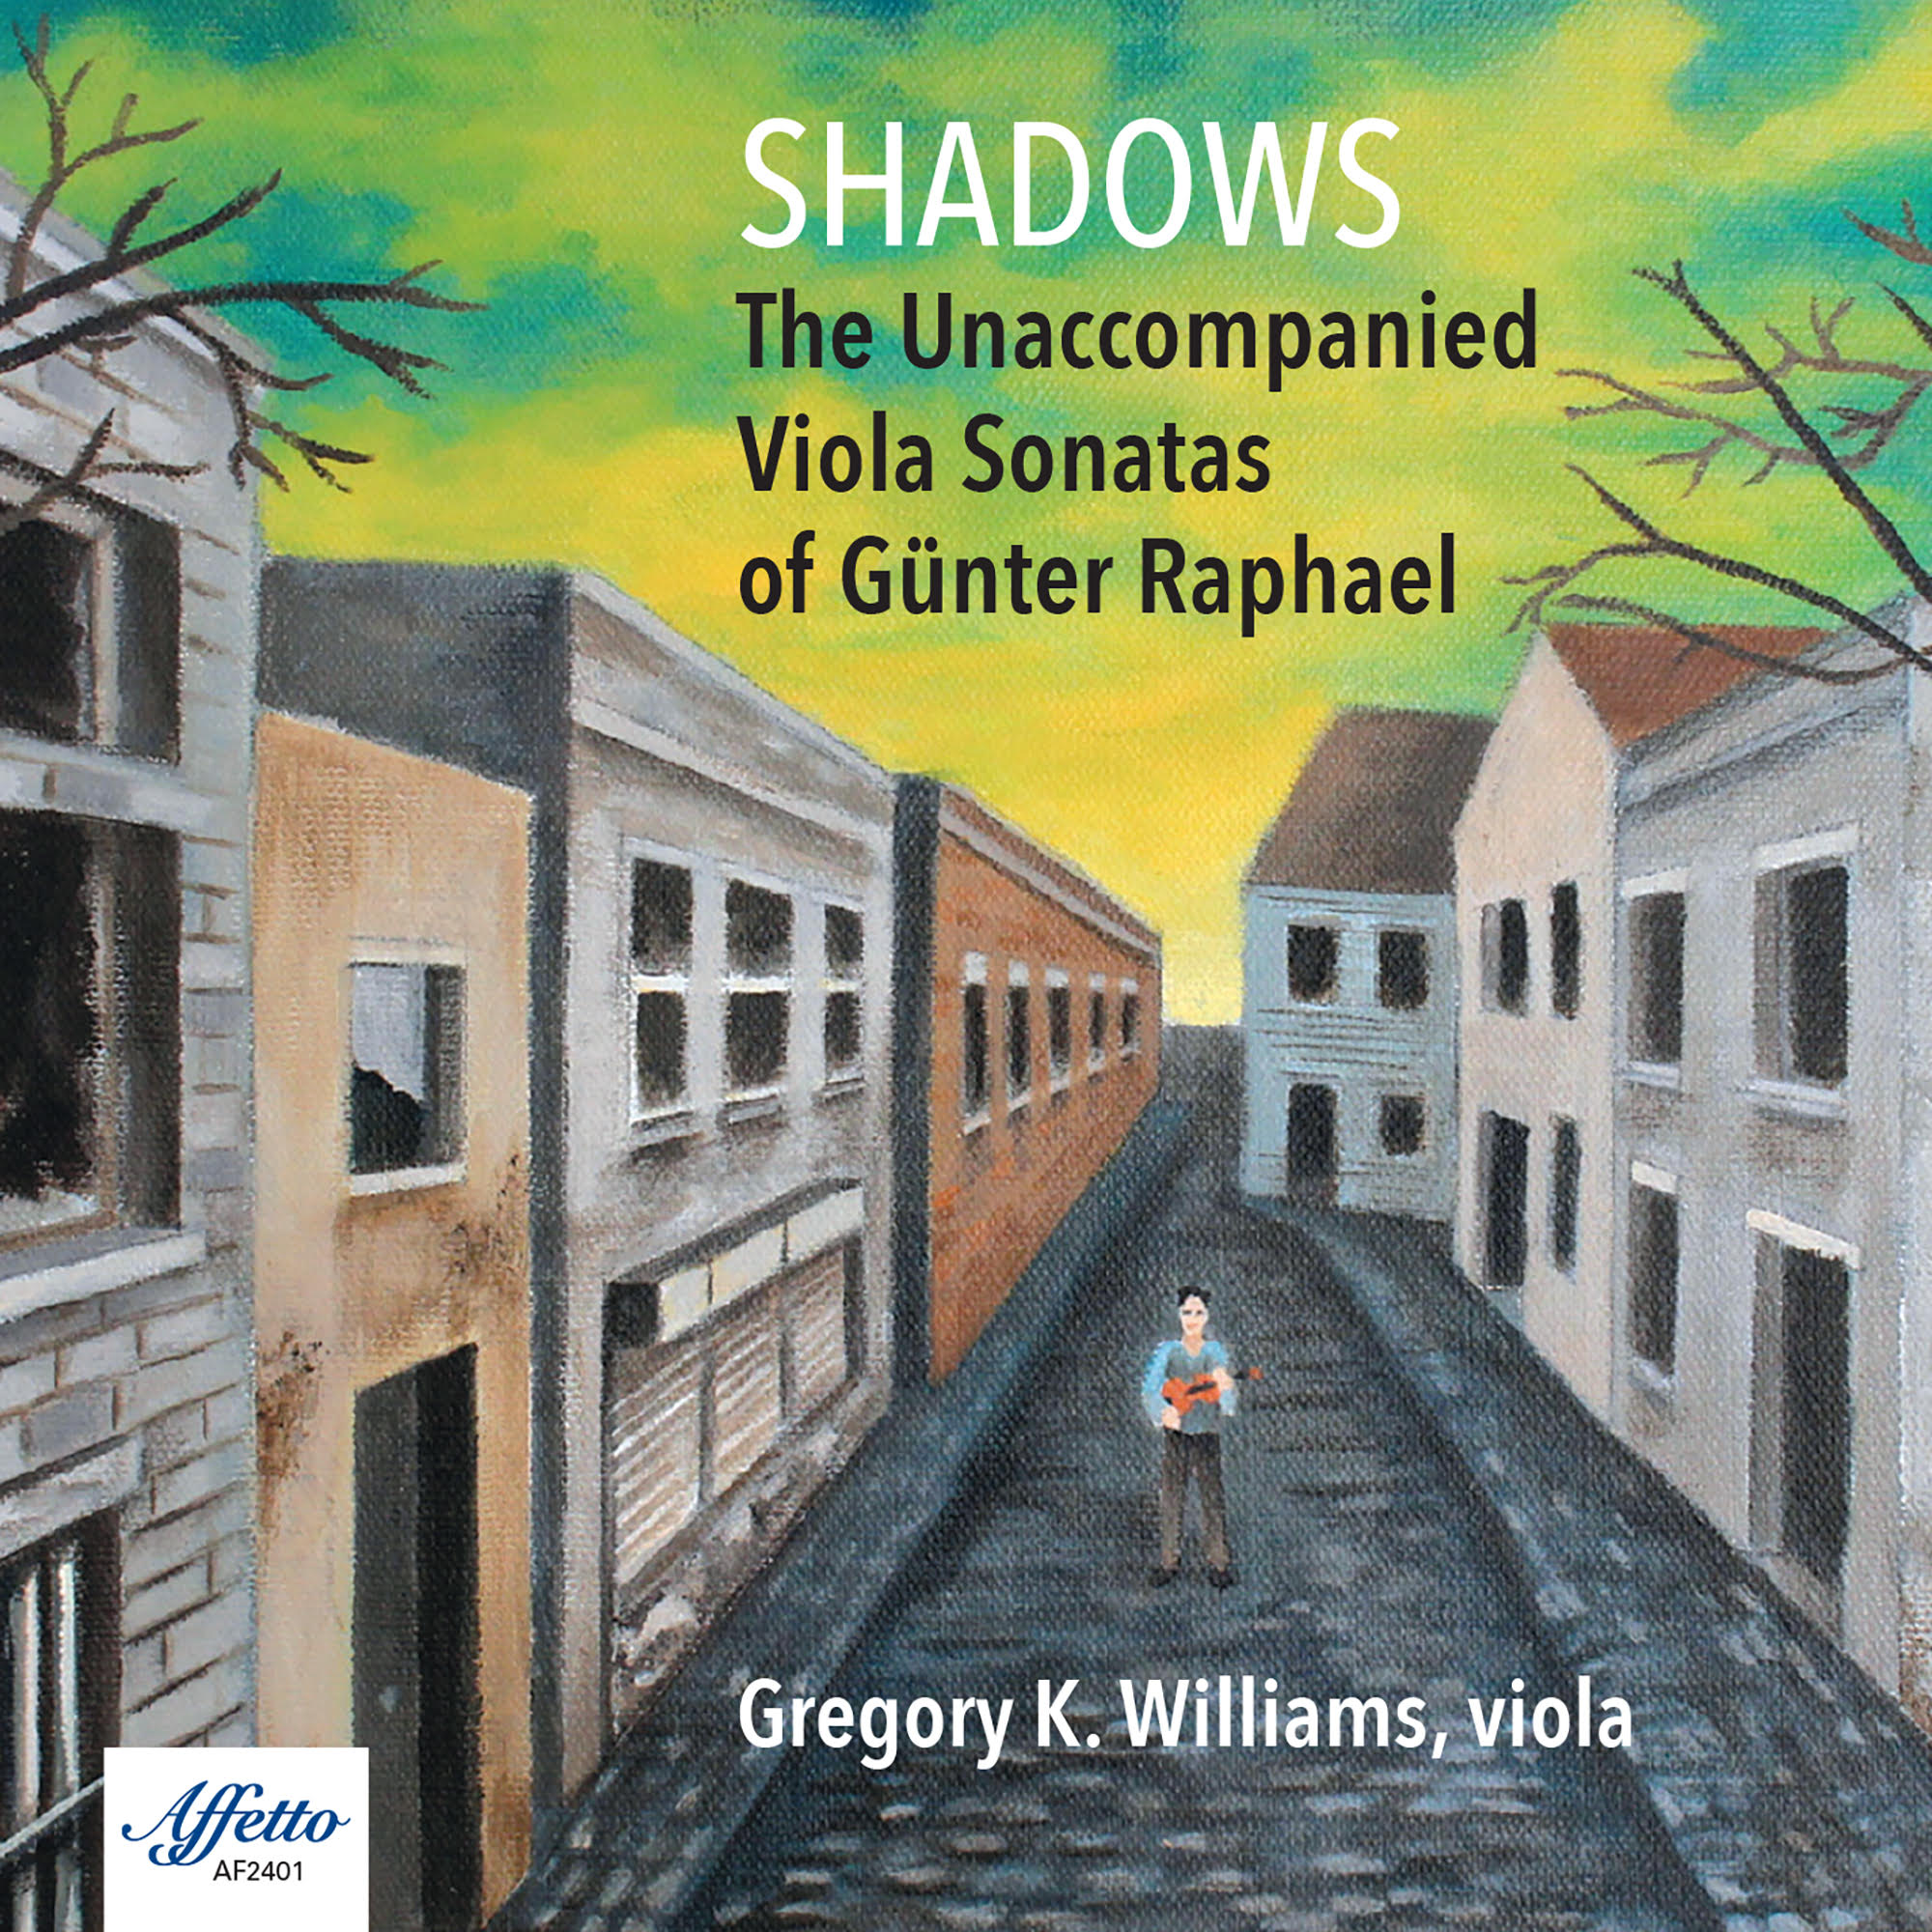 Shadows The Unaccompanied Viola Sonatas of Günter Raphael – Gregory K. Williams, viola